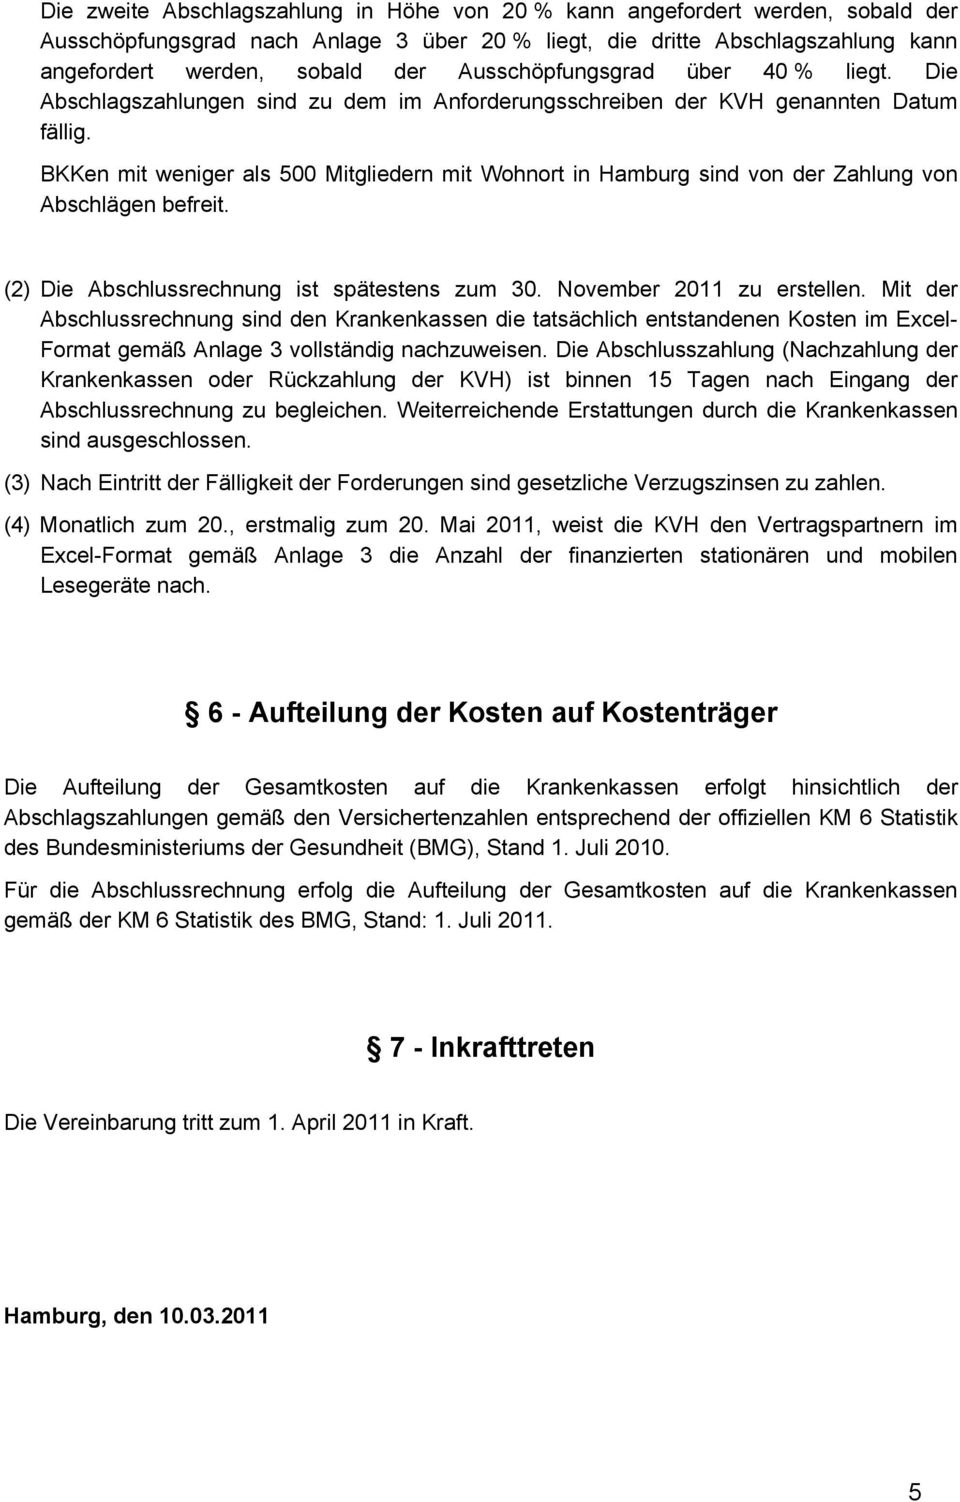 BKKen mit weniger als 500 Mitgliedern mit Wohnort in Hamburg sind von der Zahlung von Abschlägen befreit. (2) Die Abschlussrechnung ist spätestens zum 30. November 2011 zu erstellen.